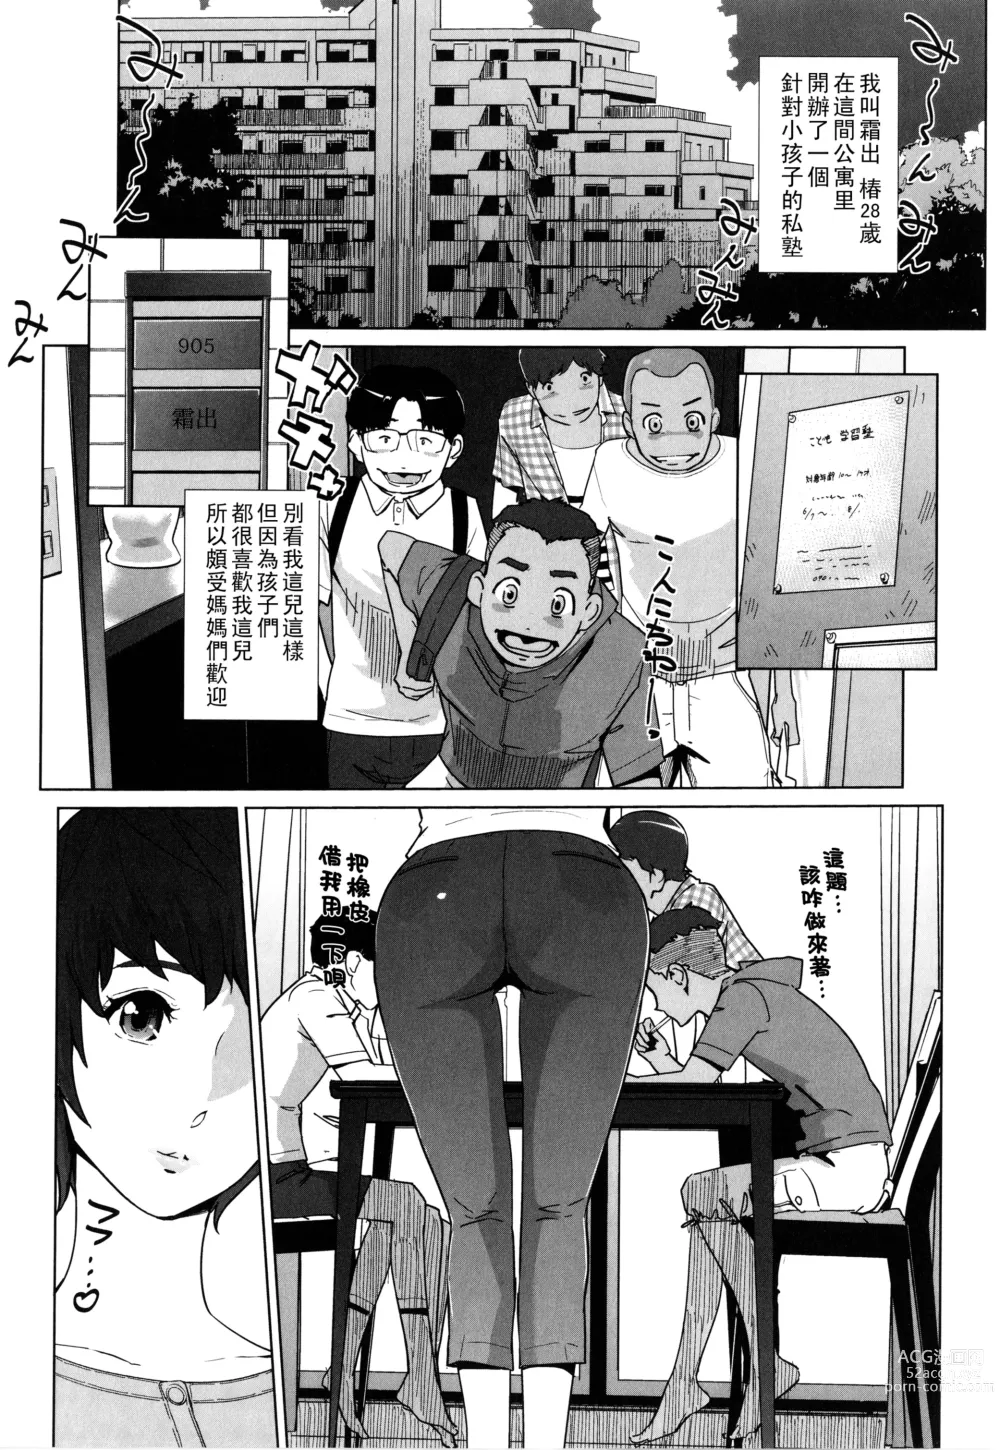 Page 19 of manga Natsu no Su